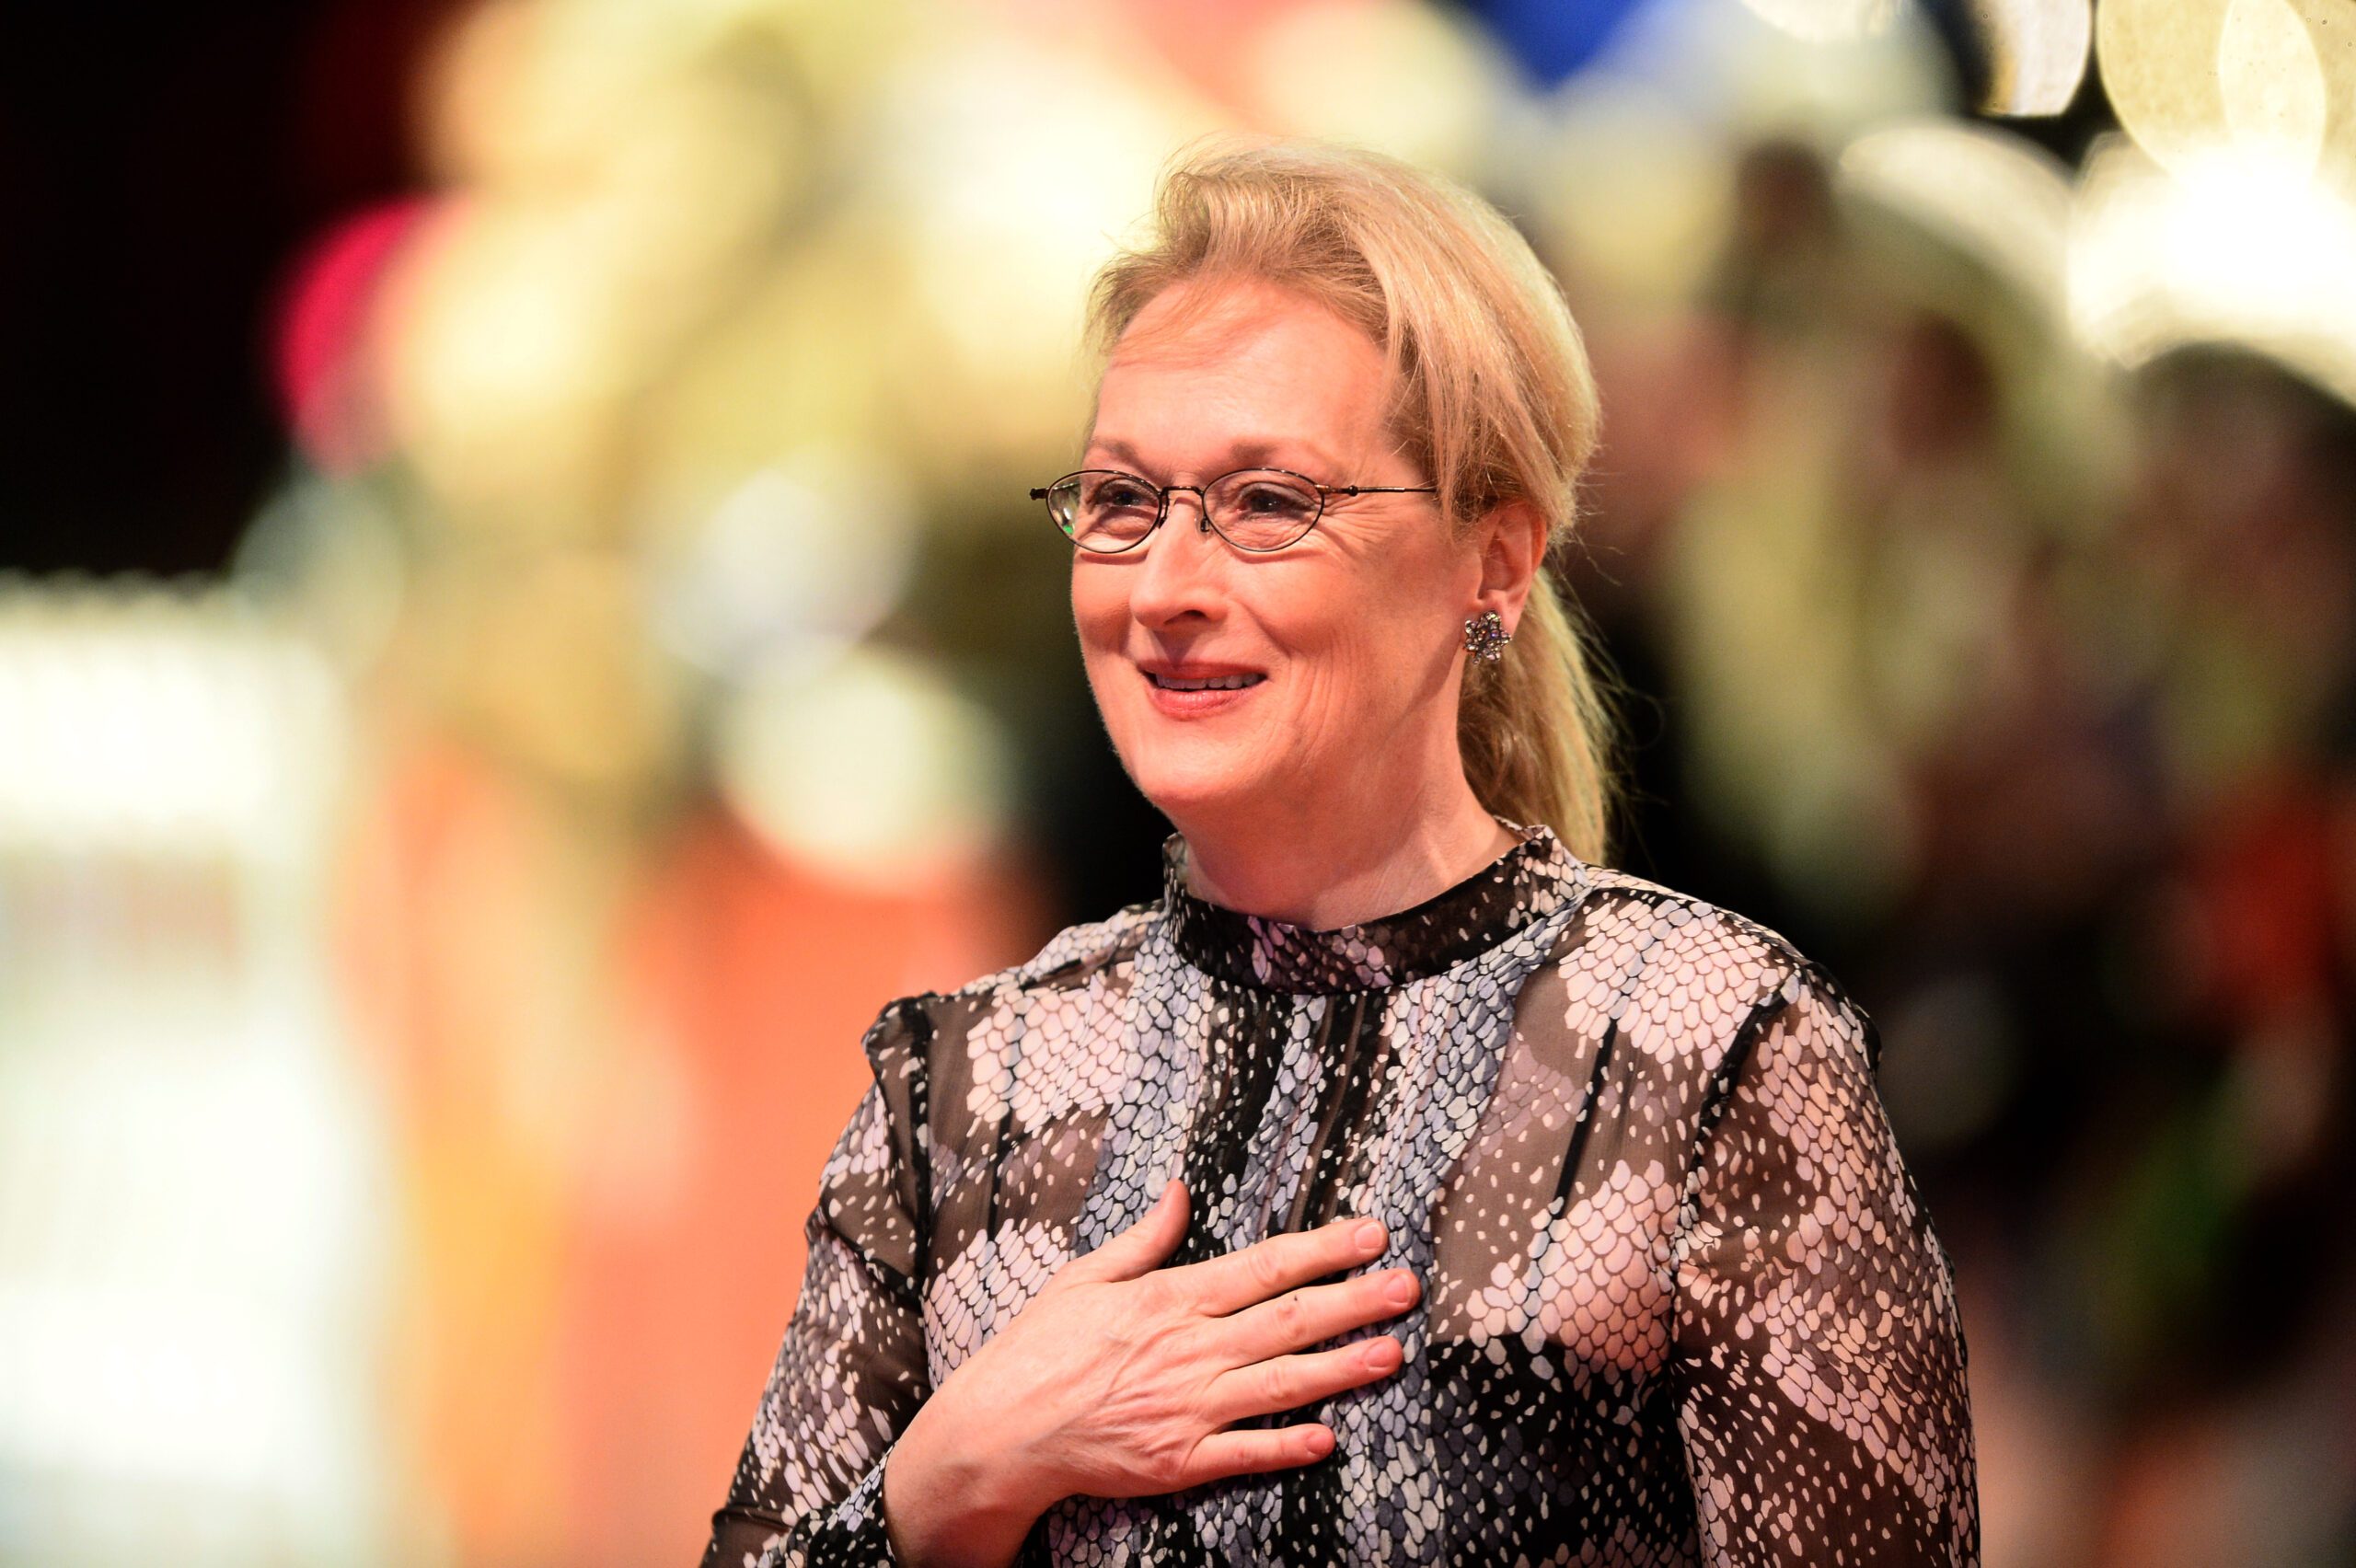 Meryl Streep blasts white male studio bosses for blocking diversity